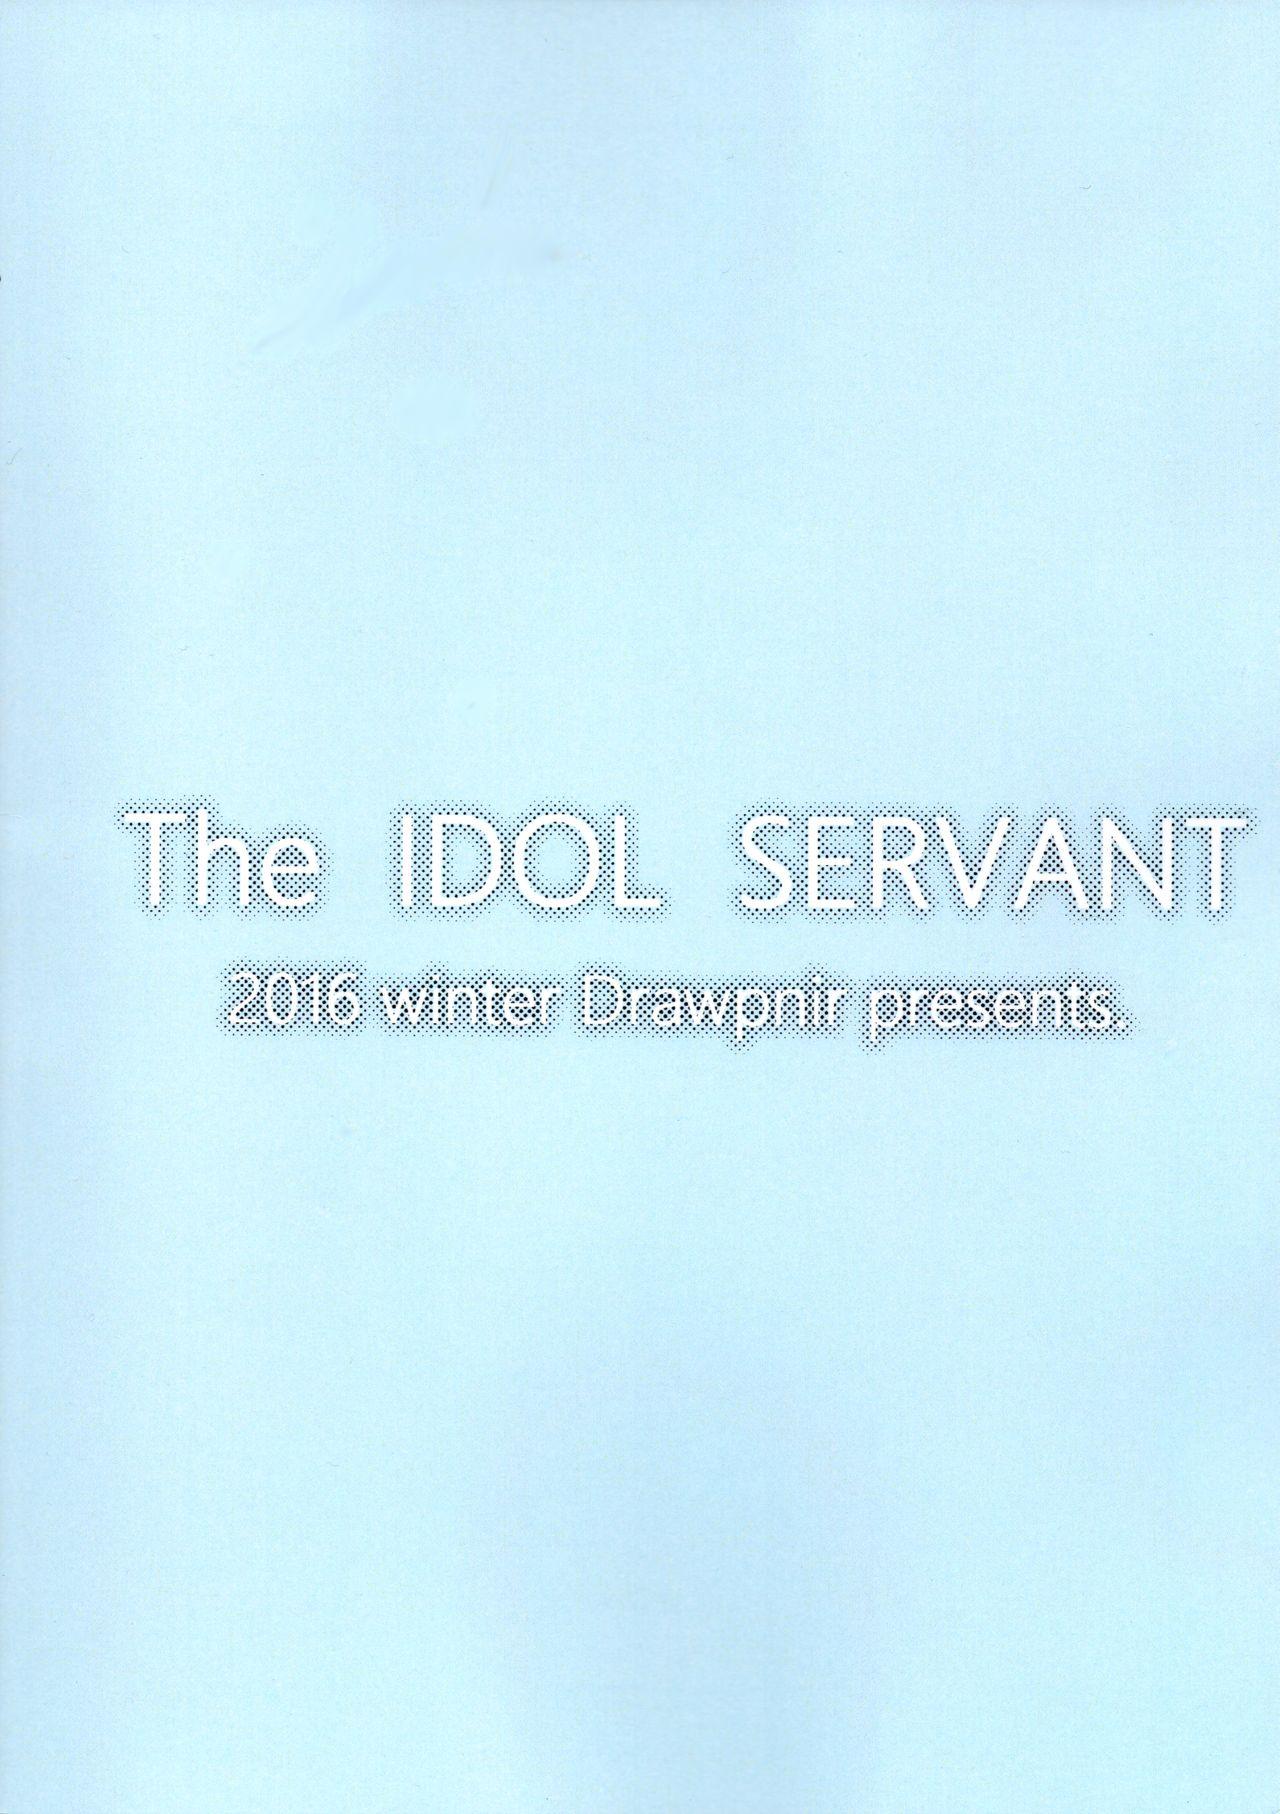 The IDOL SERVANT 26